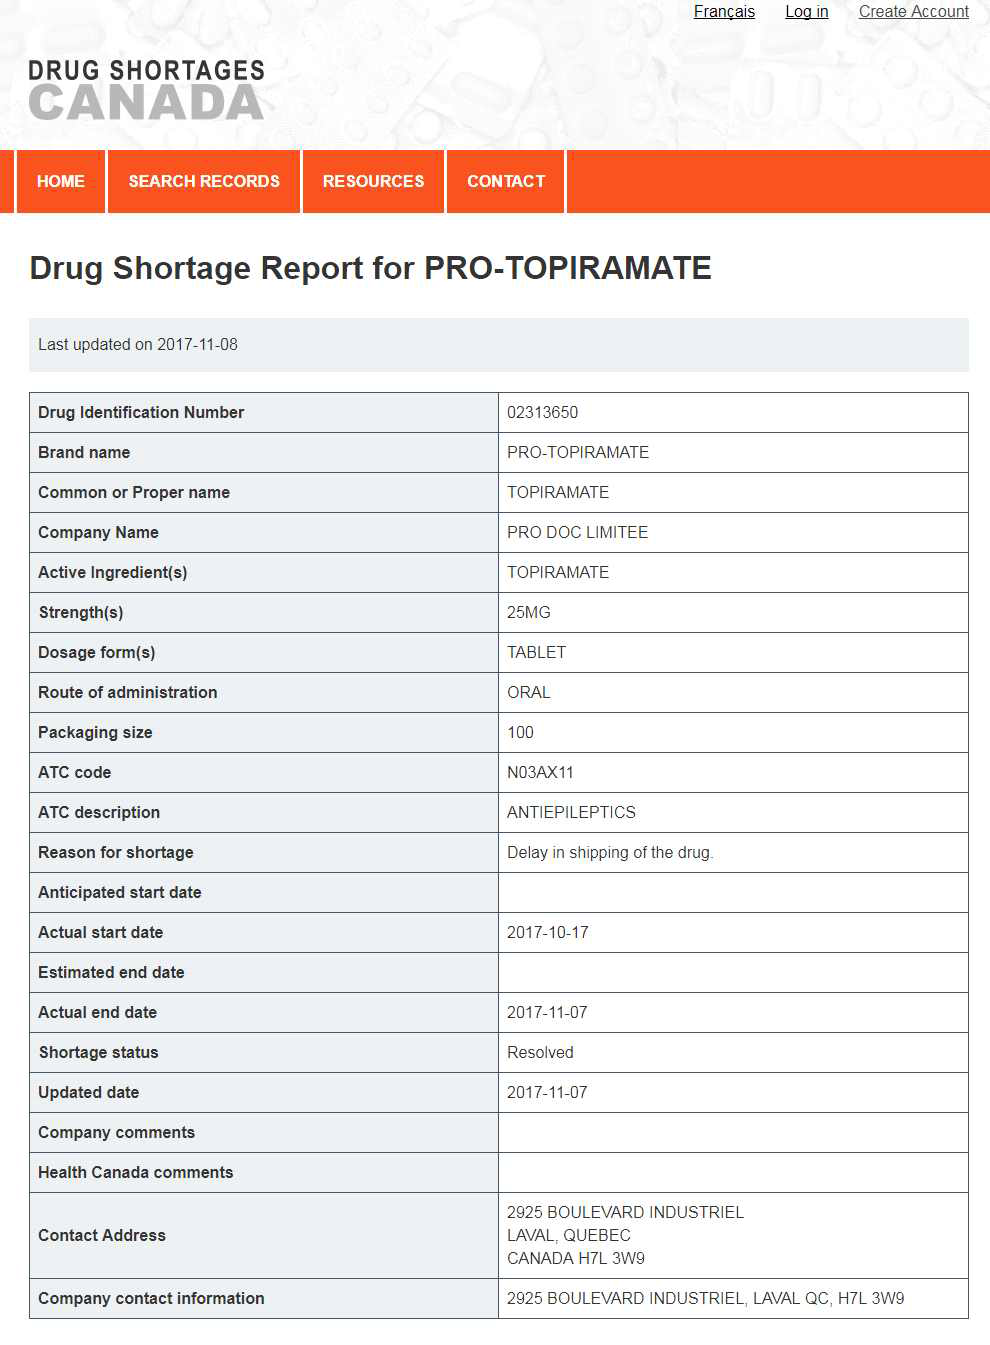 캐나다 의약품 부족 보고 웹사이트(www.drugshortagescanada.ca)의 의약품 부족 기록 예시